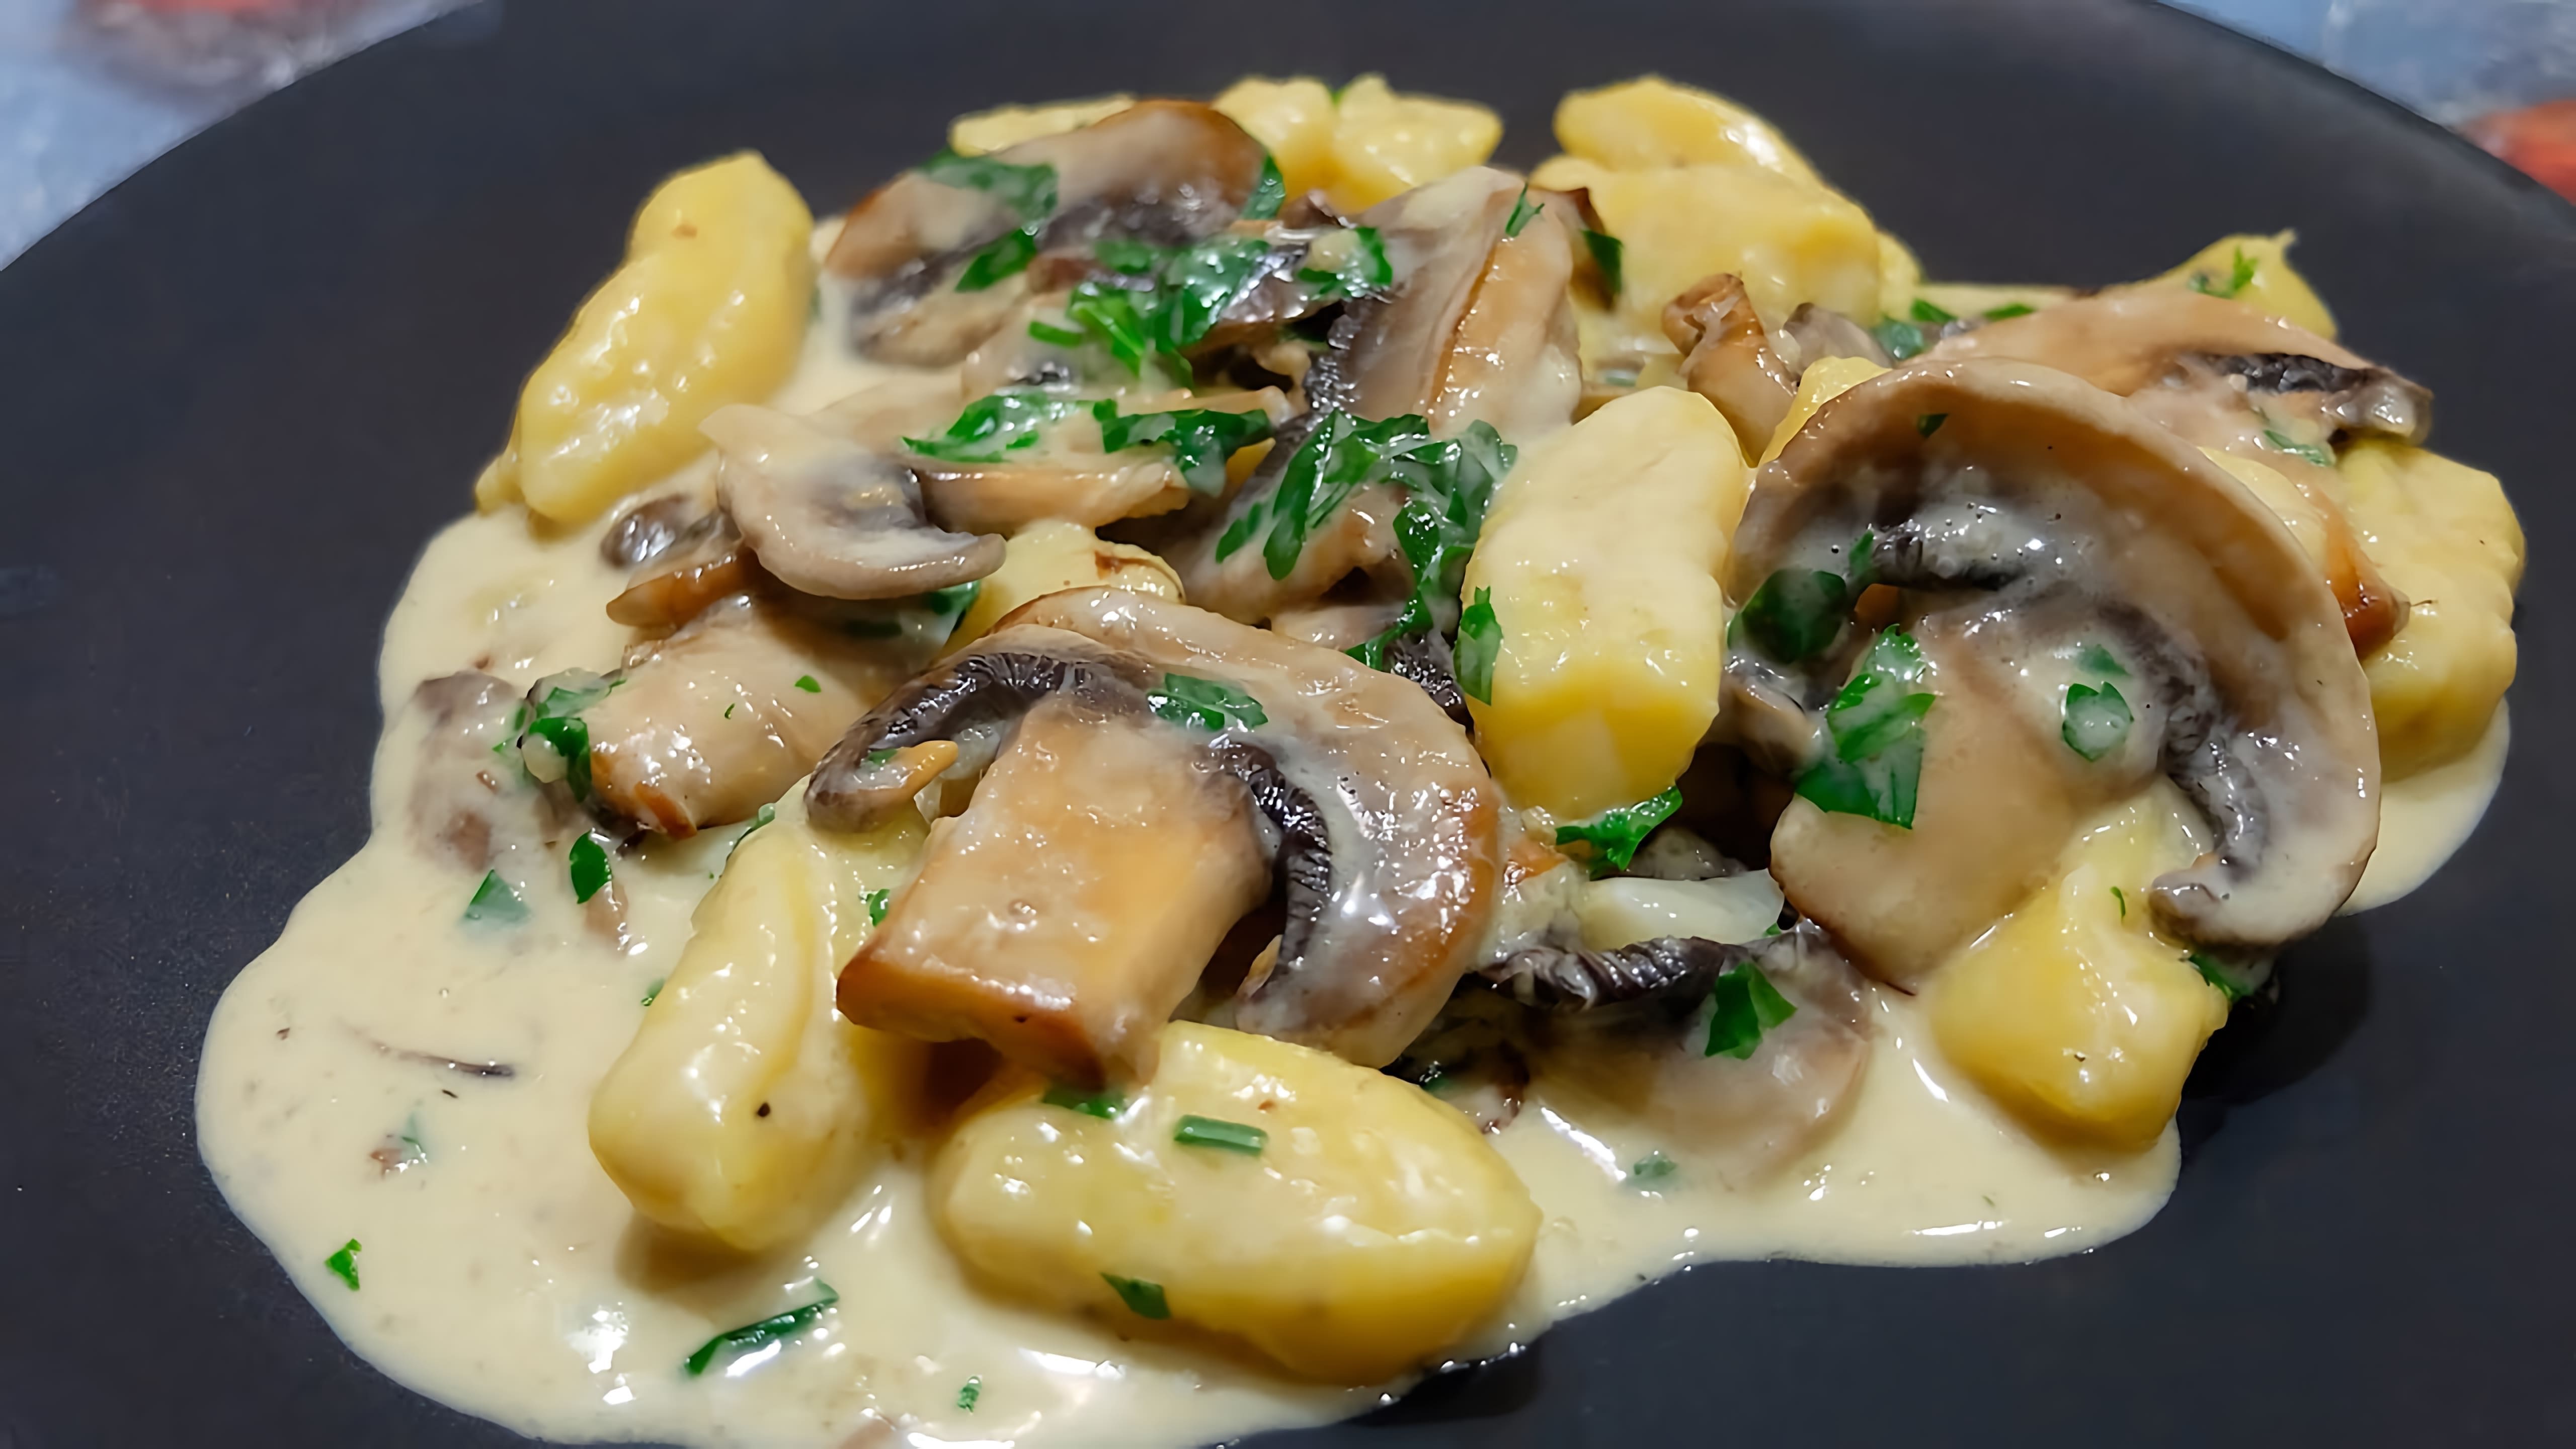 Картофельные ньокки в сливочном соусе с грибами - это вкусное и простое блюдо, которое можно приготовить дома